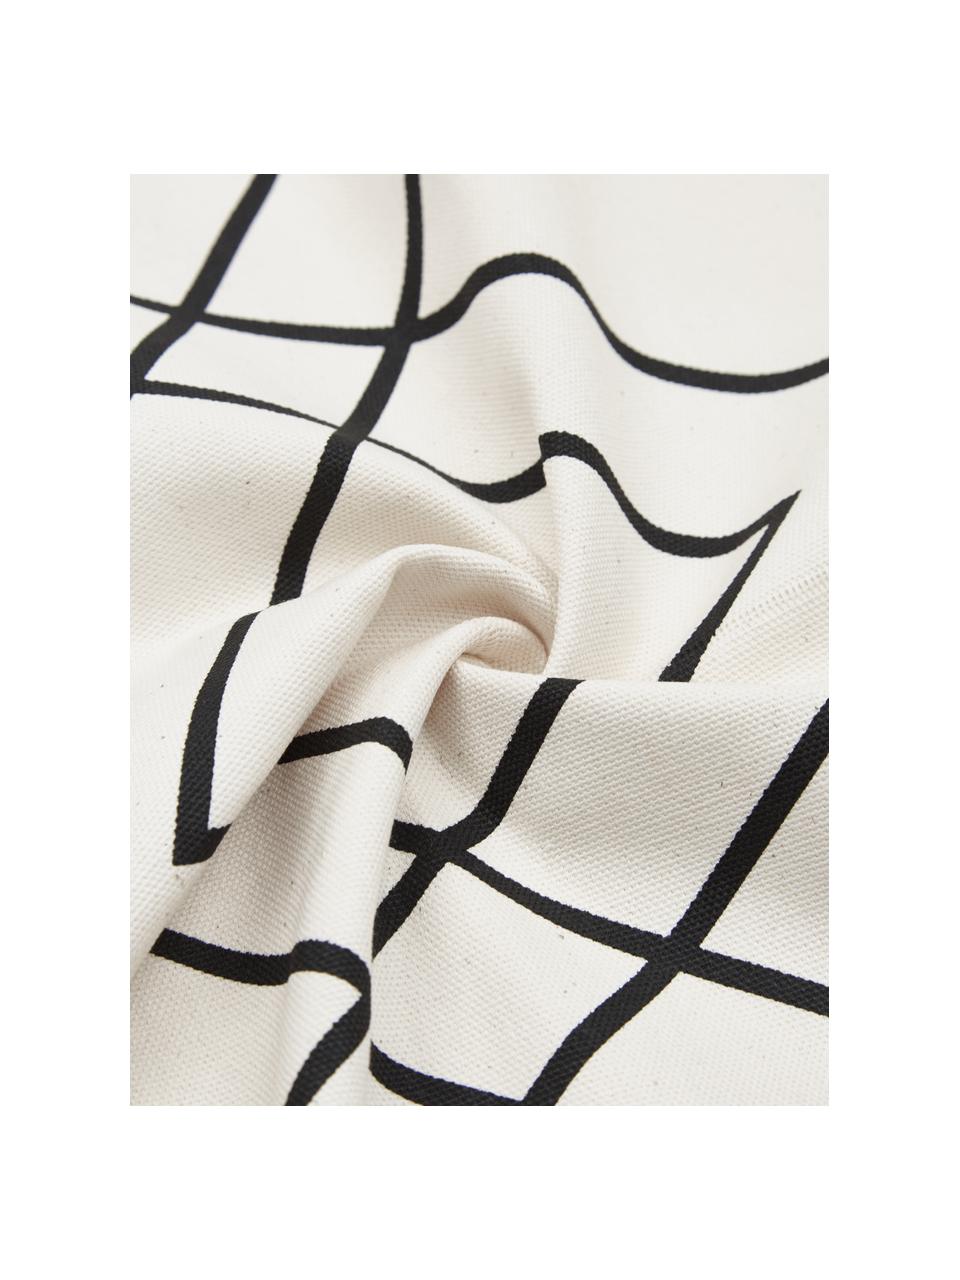 Poszewka na poduszkę w stylu boho Ausel, 100% bawełna, Biały, czarny, S 30 x D 50 cm